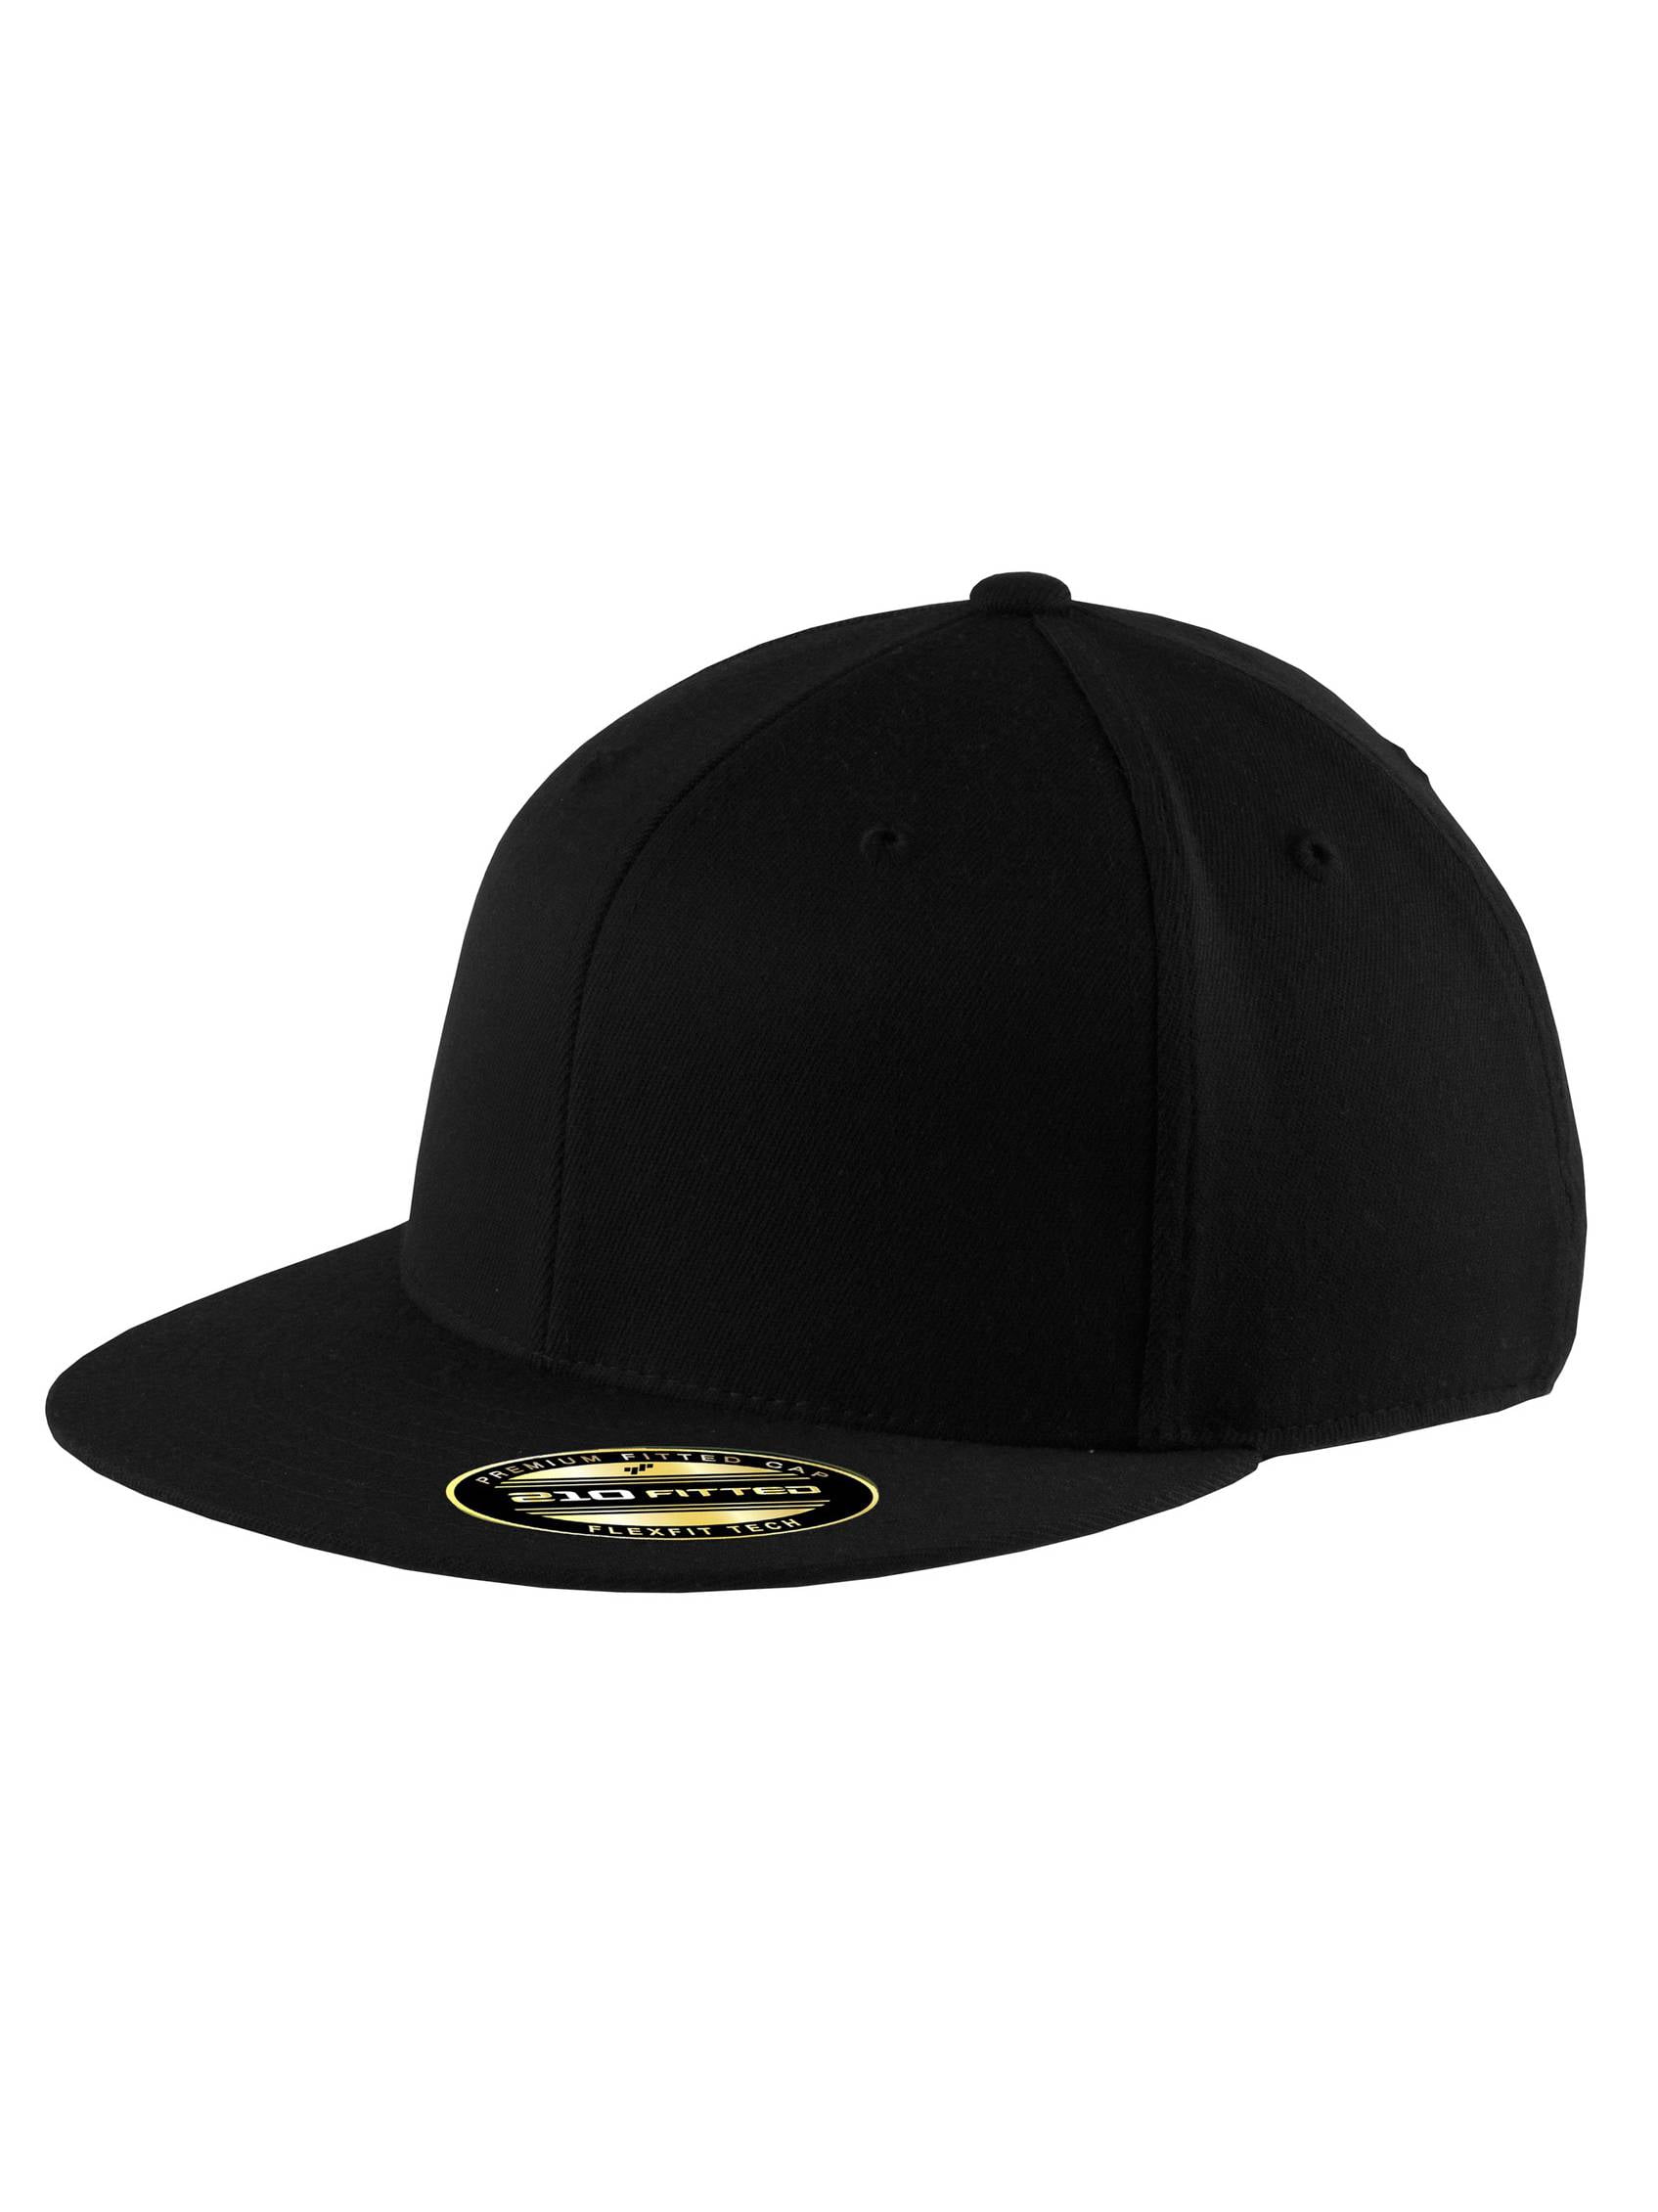 Flat - Small/Medium Bill Cap Flexible Headwear Black Top -